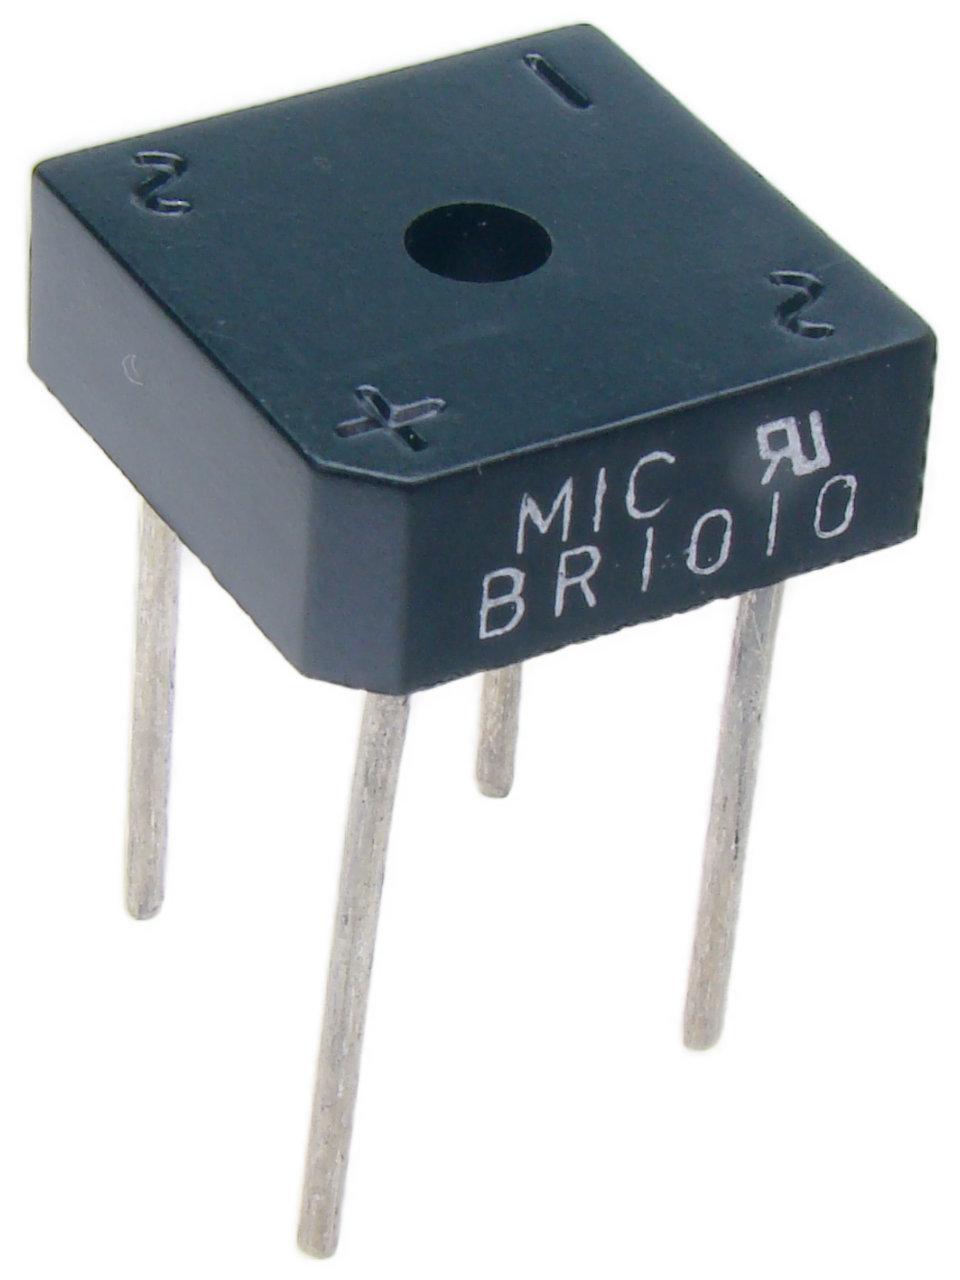 Mostek KBPC1010/BR1010 (10A/1000V) MIC kwadratowy pinowy RoHS